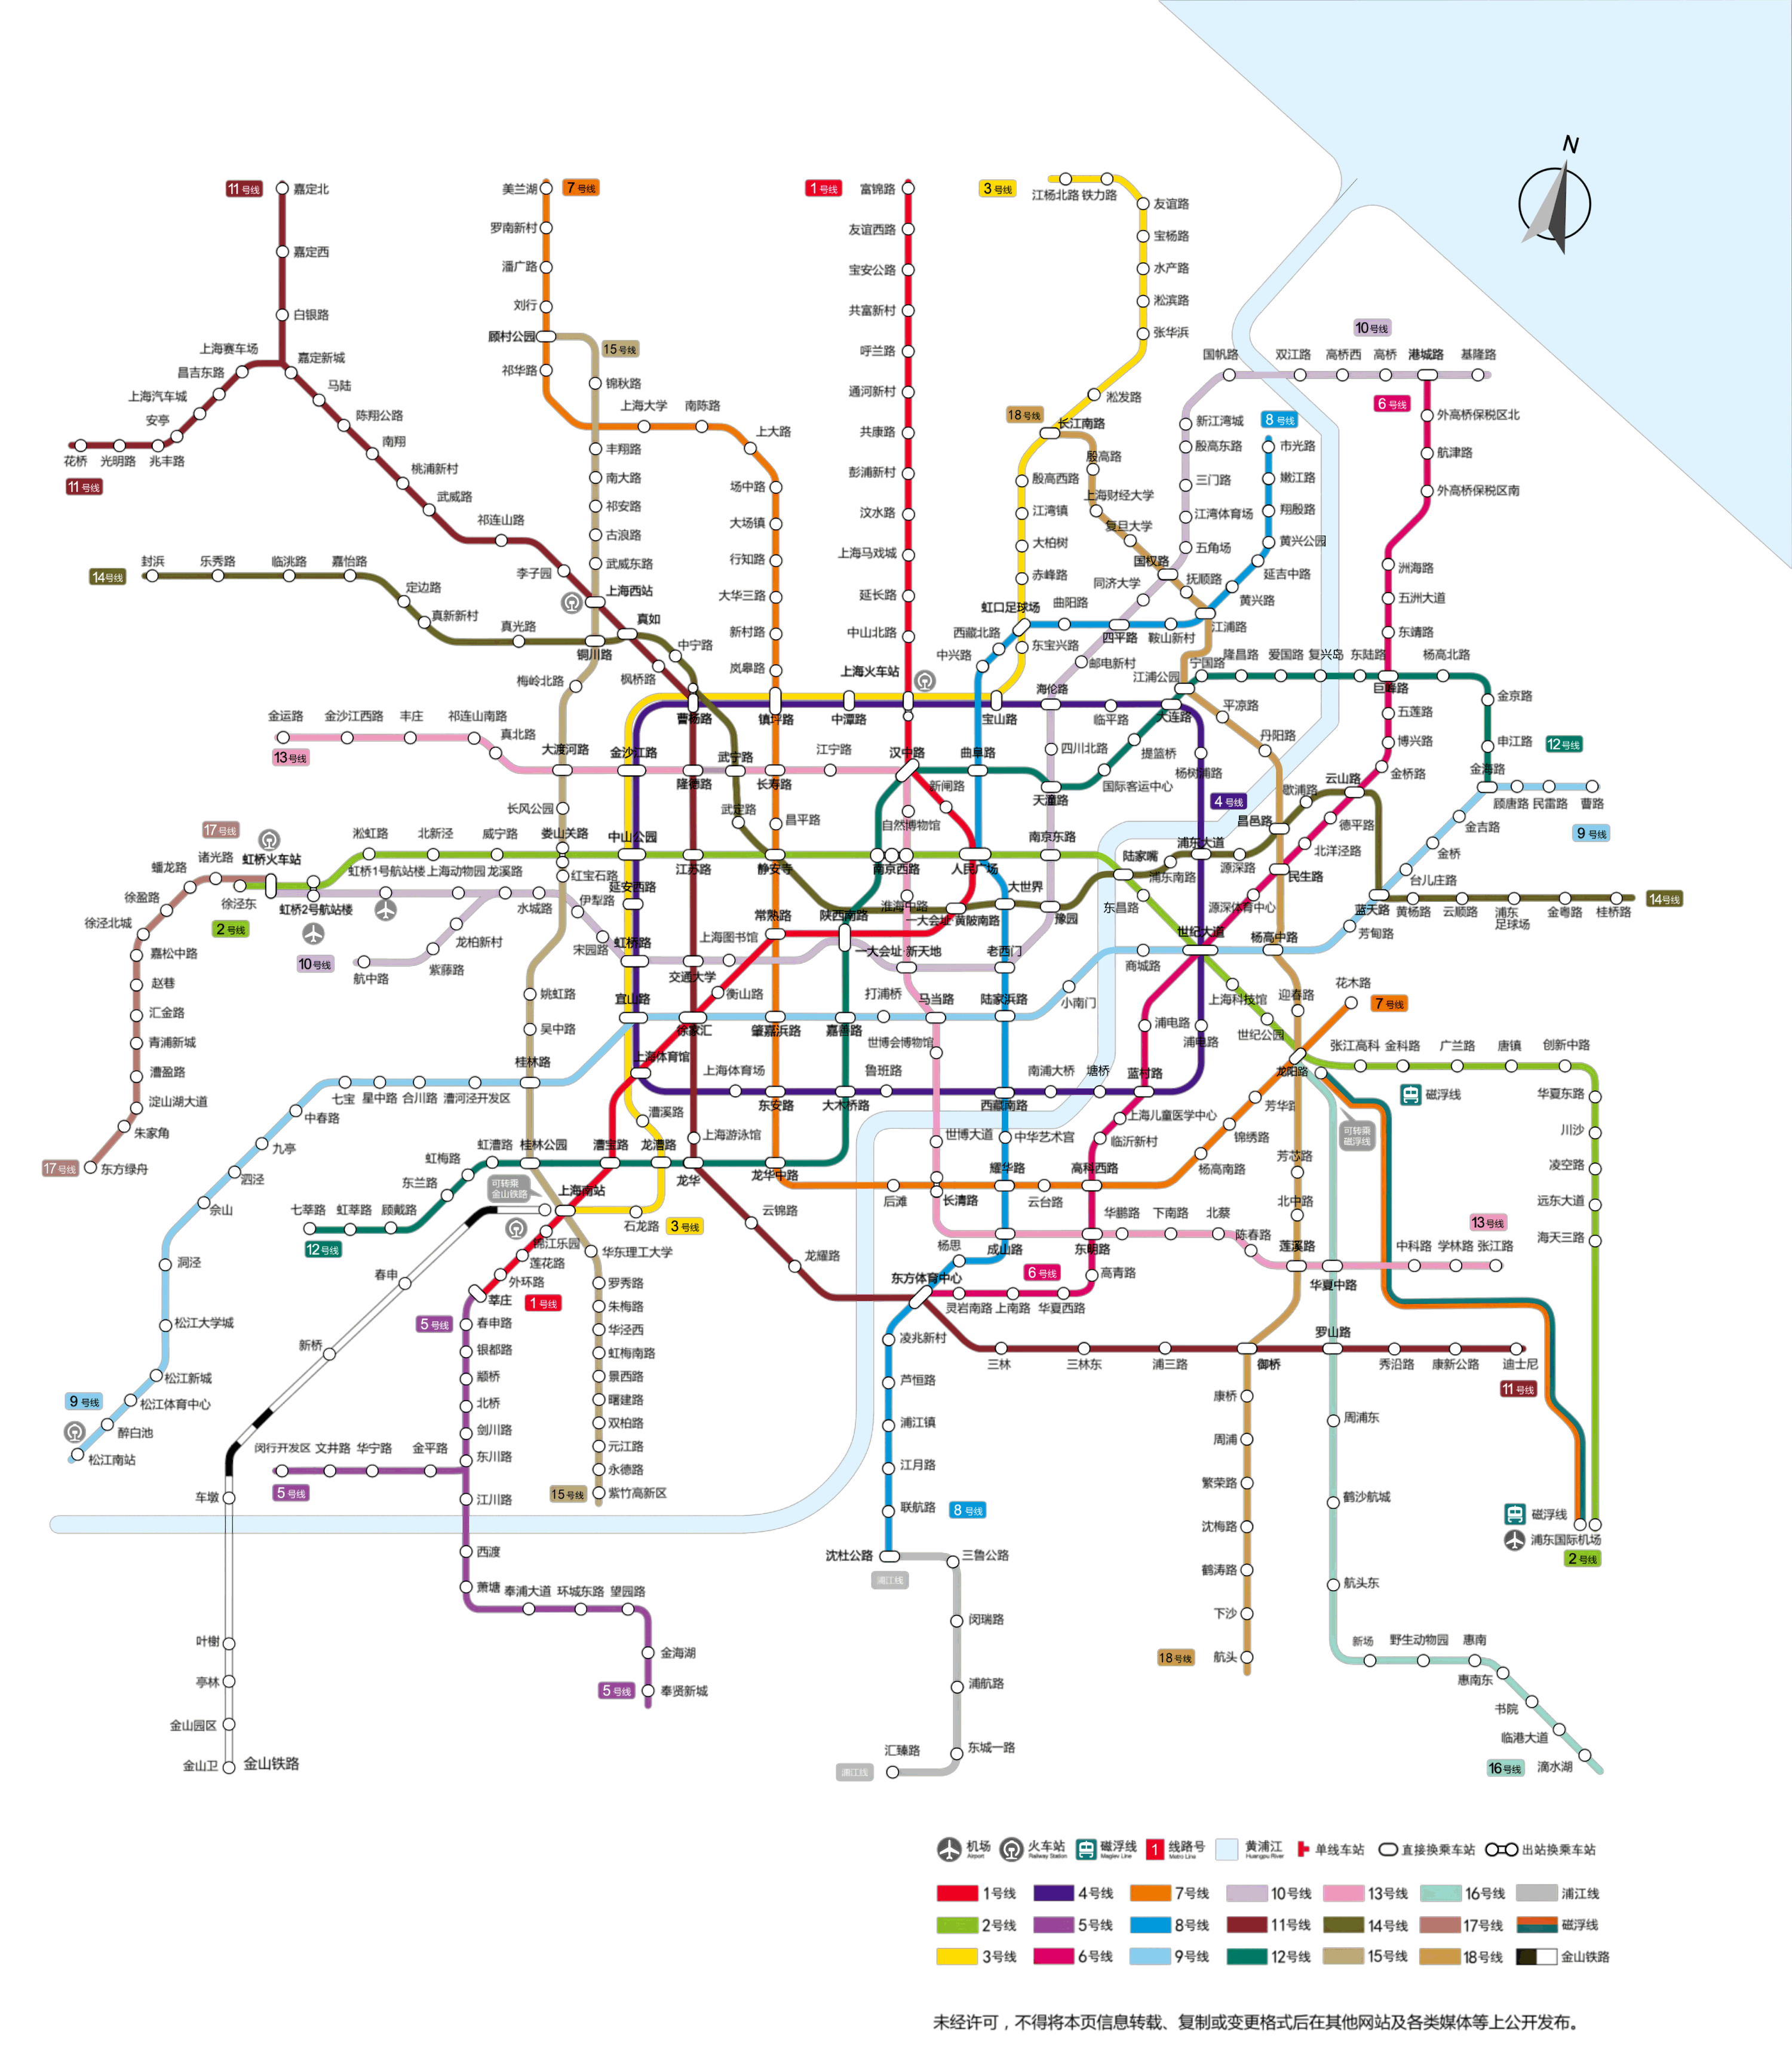 上海地铁嘉闵线站点线路图(城北路-银都路)-上海地铁嘉闵线首末车时间-运营时间